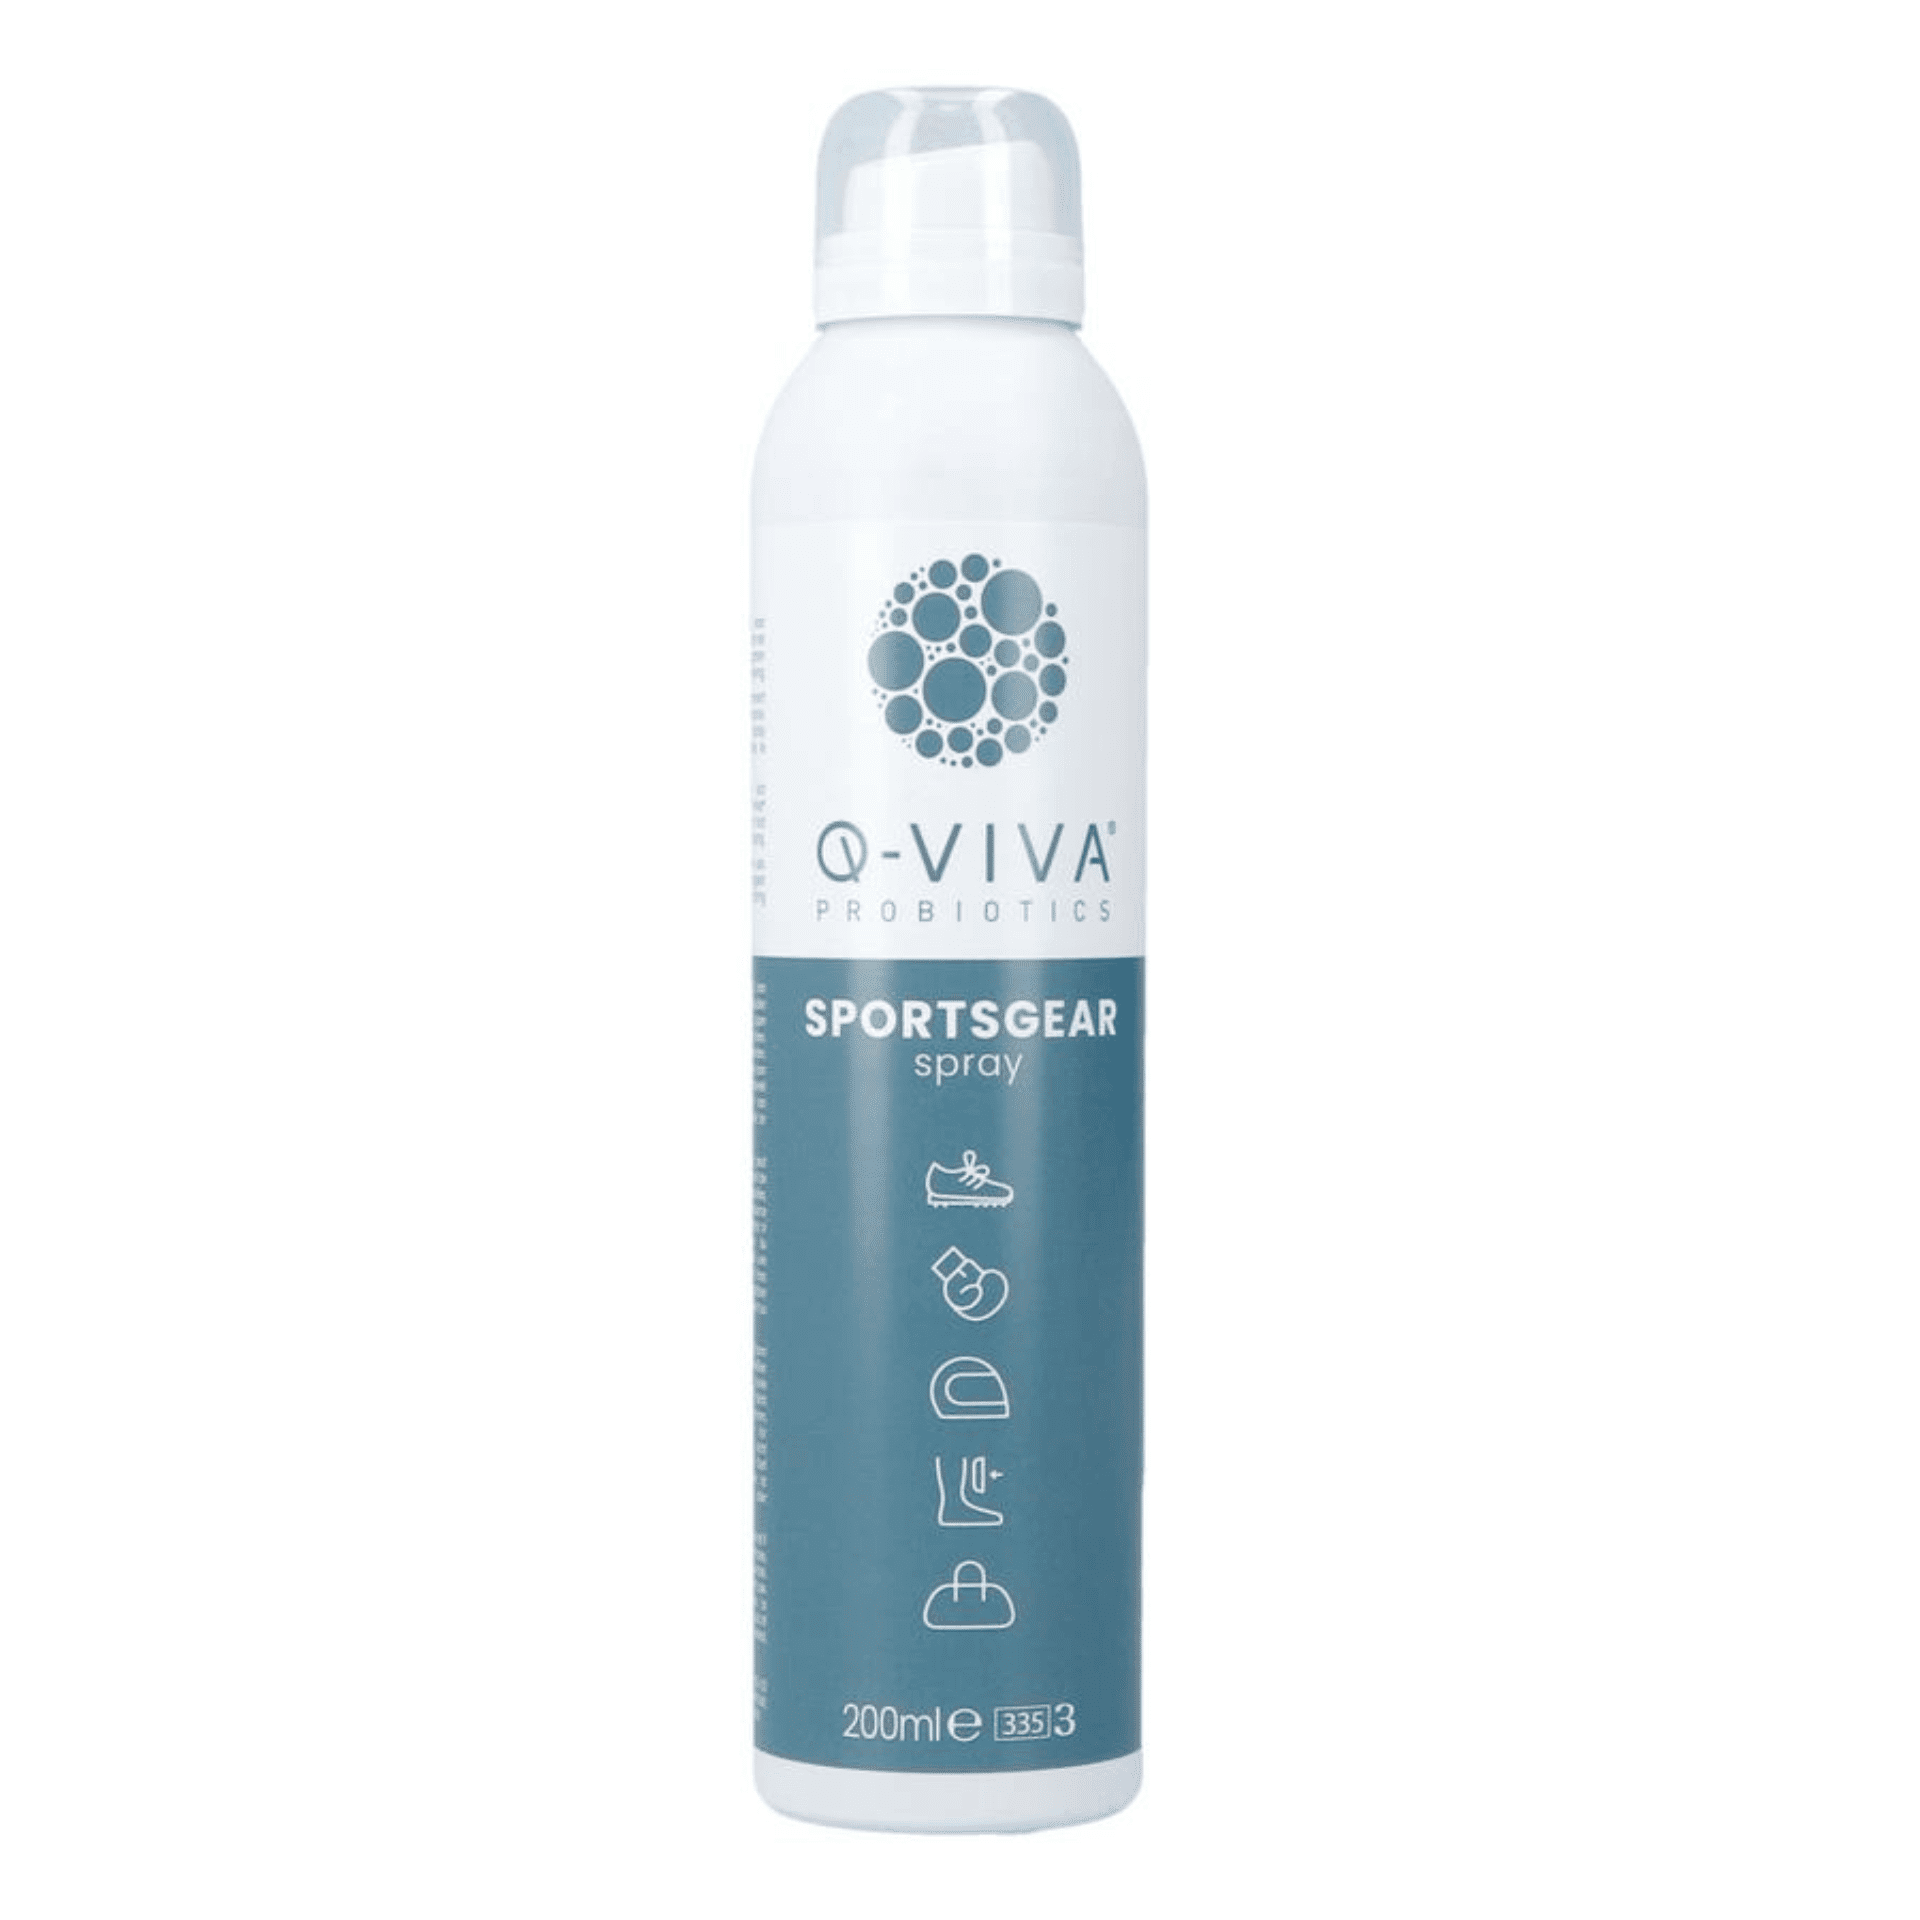 Q-Viva Probiotics Sportsgear Spray